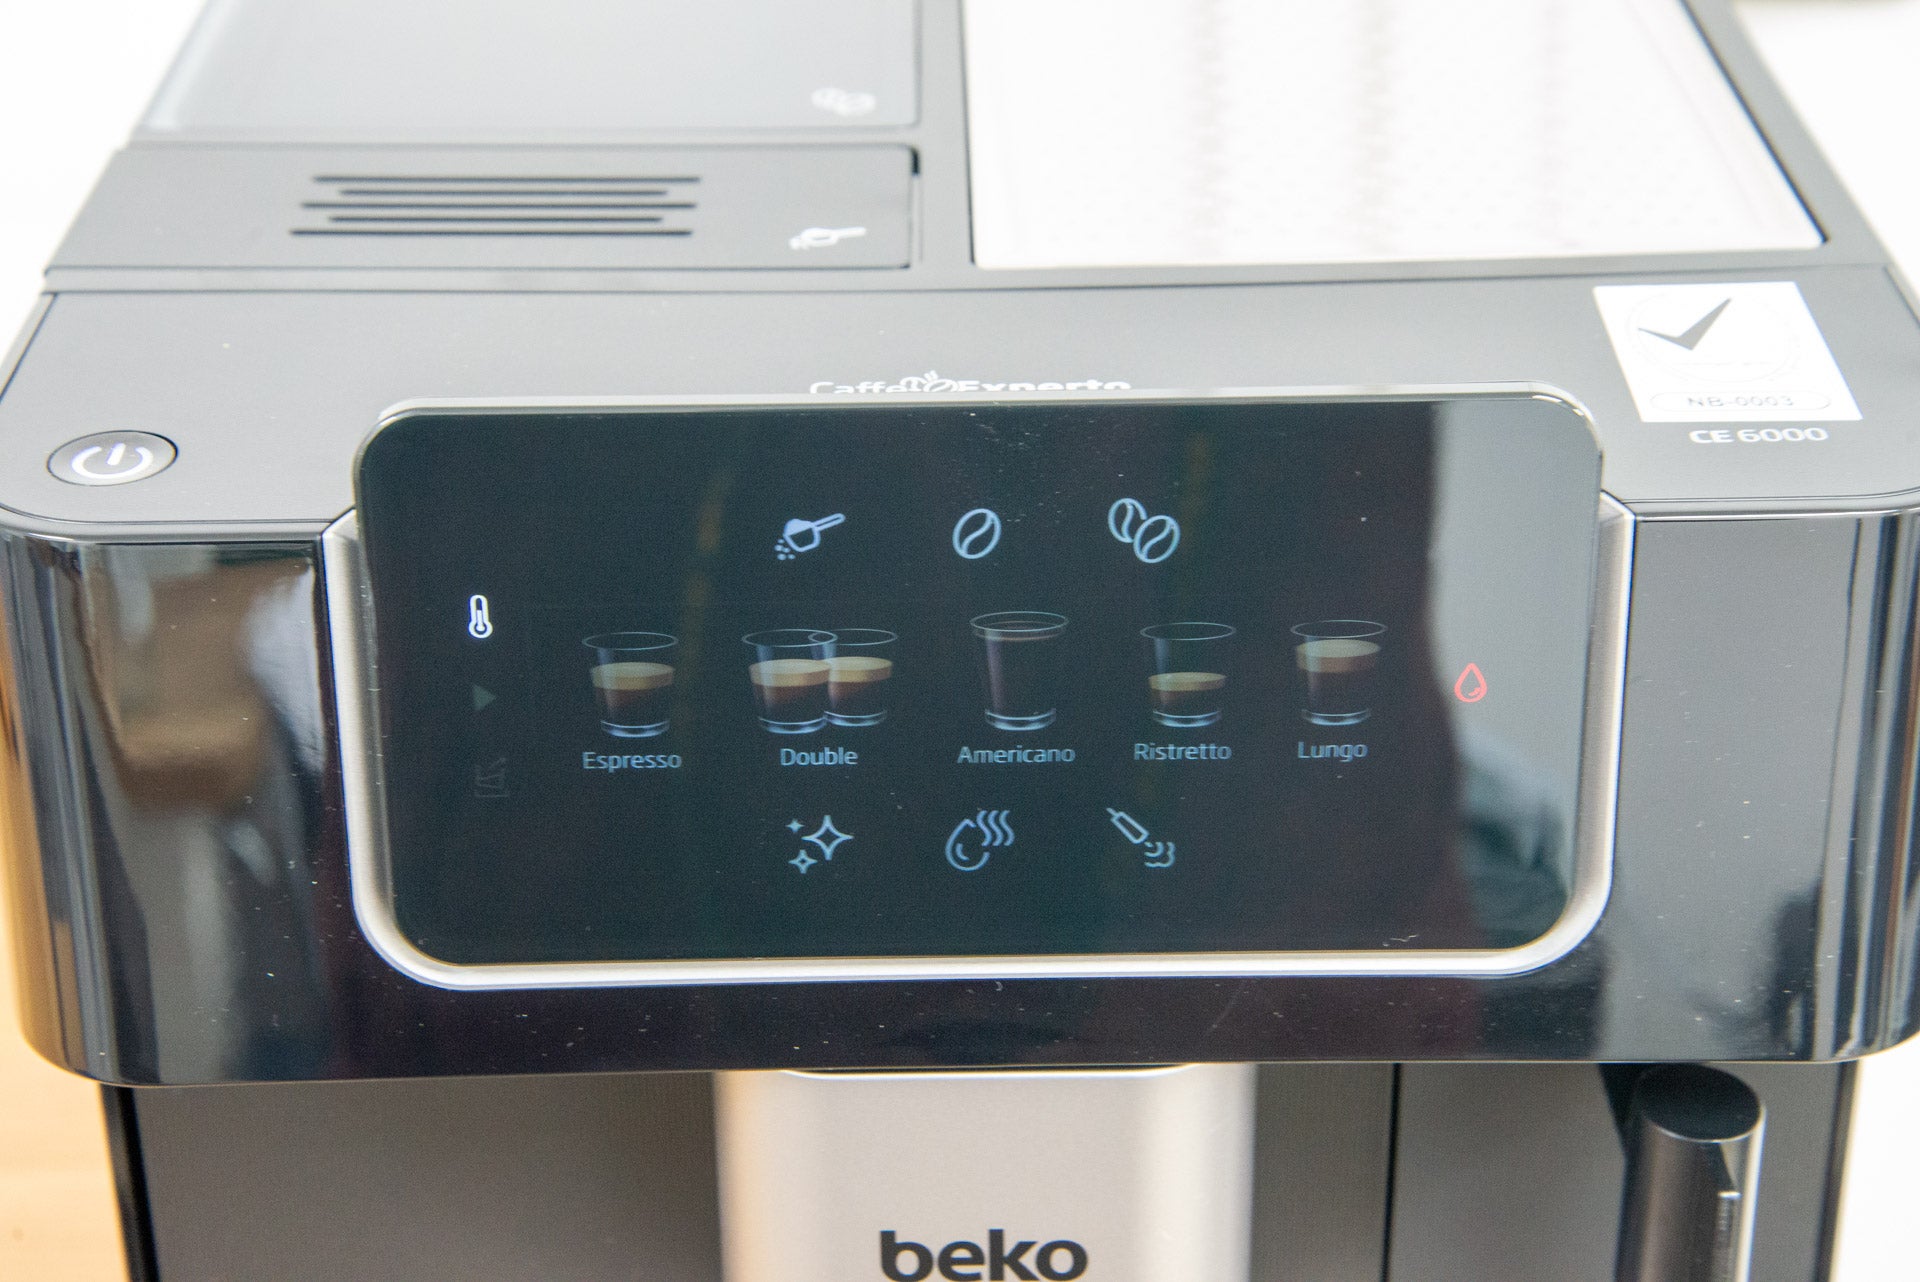 Beko CaffeExperto Bean-to-Cup-Kaffeemaschine mit Dampfstabsteuerung